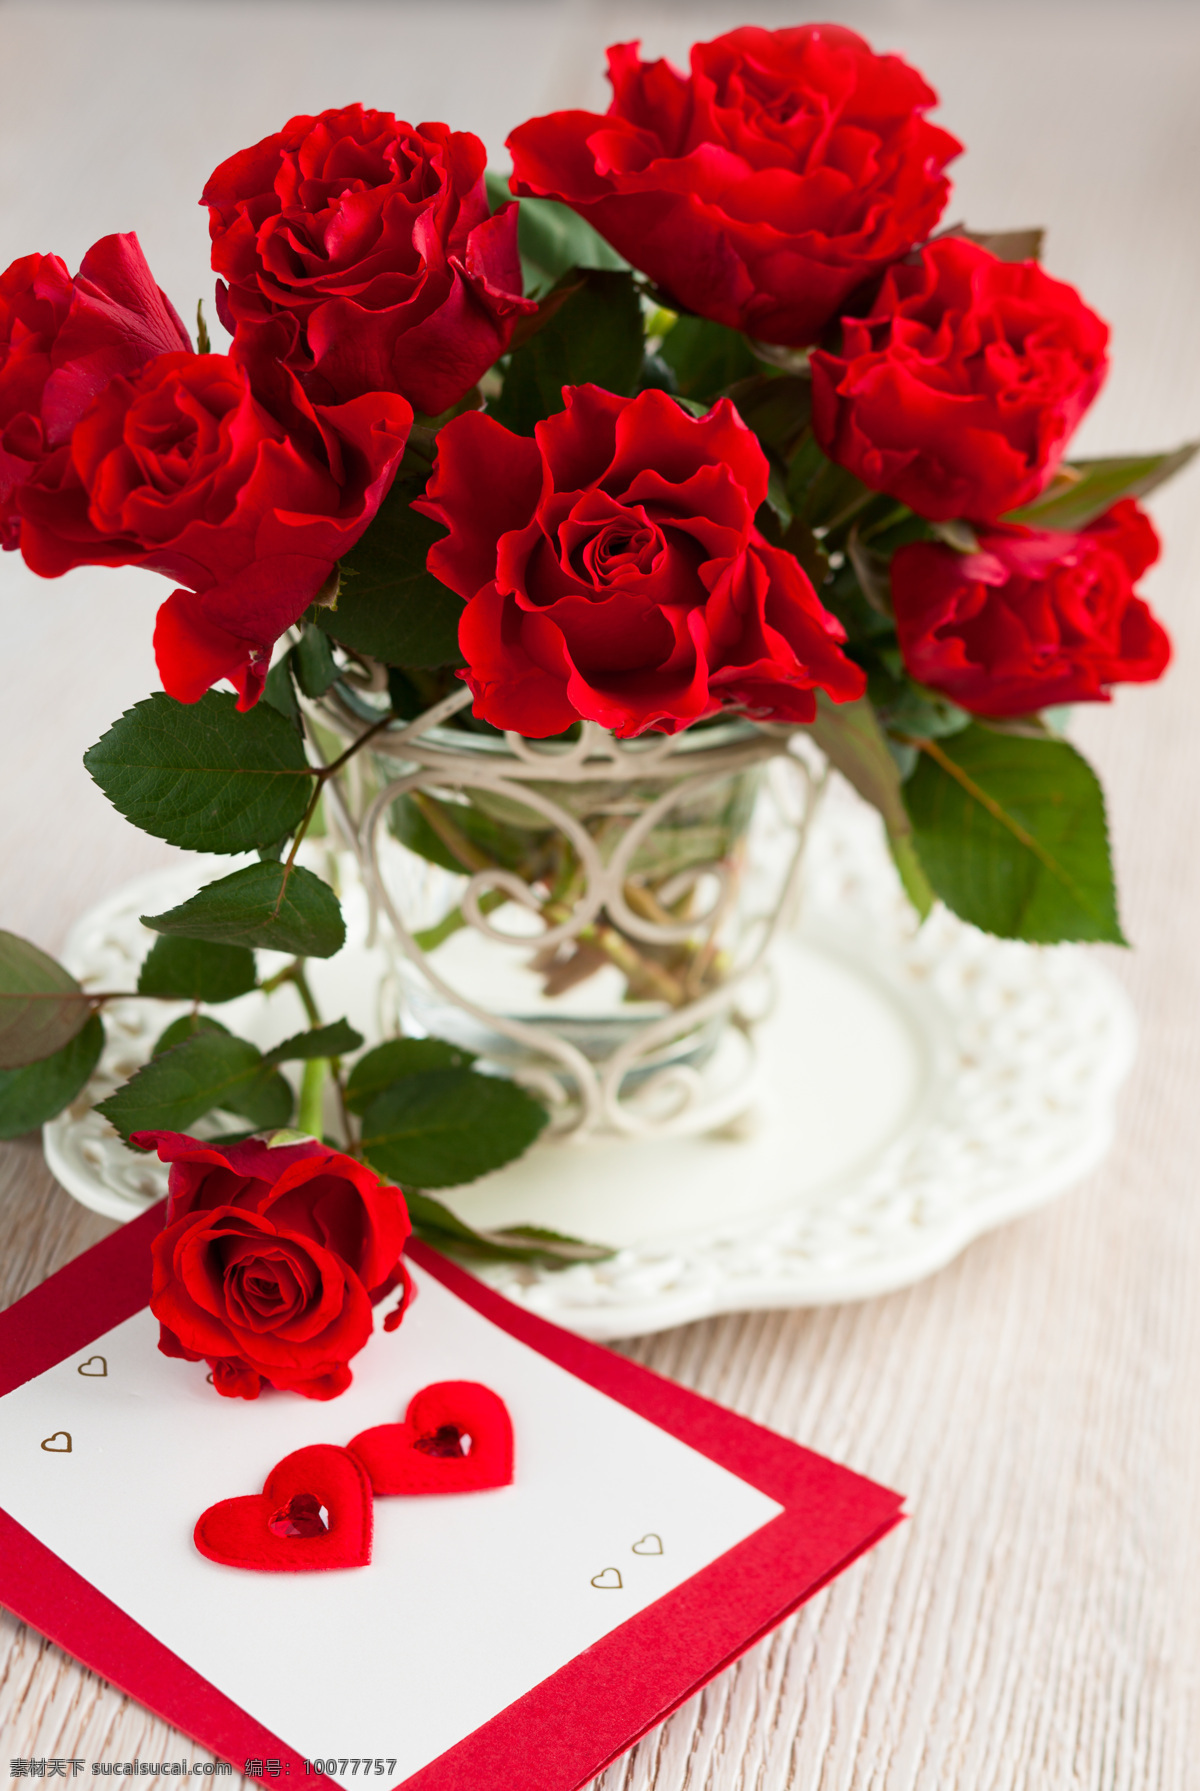 玫瑰花 花 鲜花 红玫瑰 红花 花朵 绿叶 爱情 情人节 植物 花草 生物世界